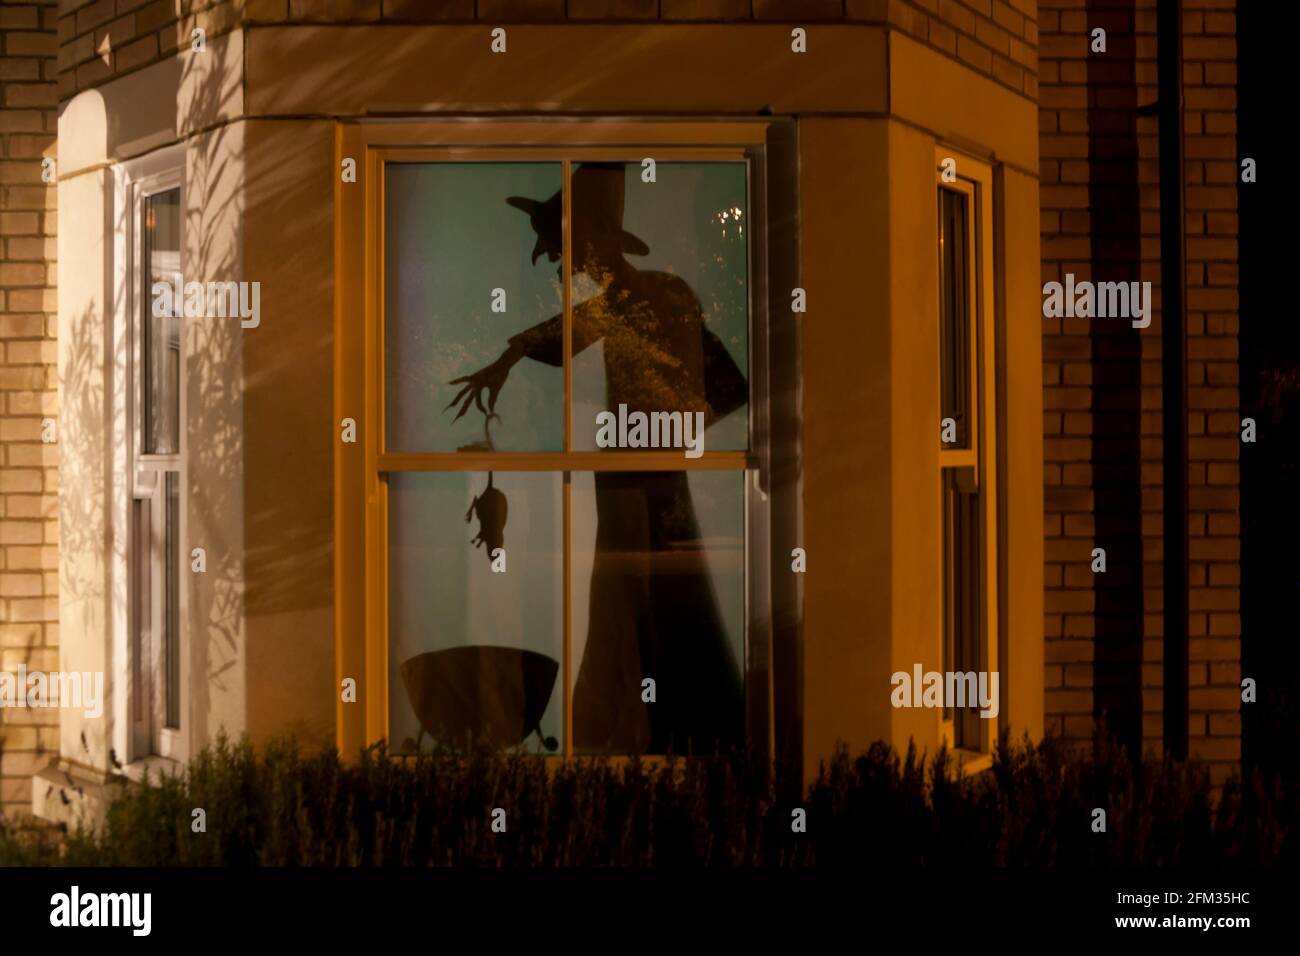 Decoración de la silueta de la ventana de Halloween: Una bruja que agrega una rata o un ratón a su caldero. La calle exterior se refleja en la ventana. Foto de stock